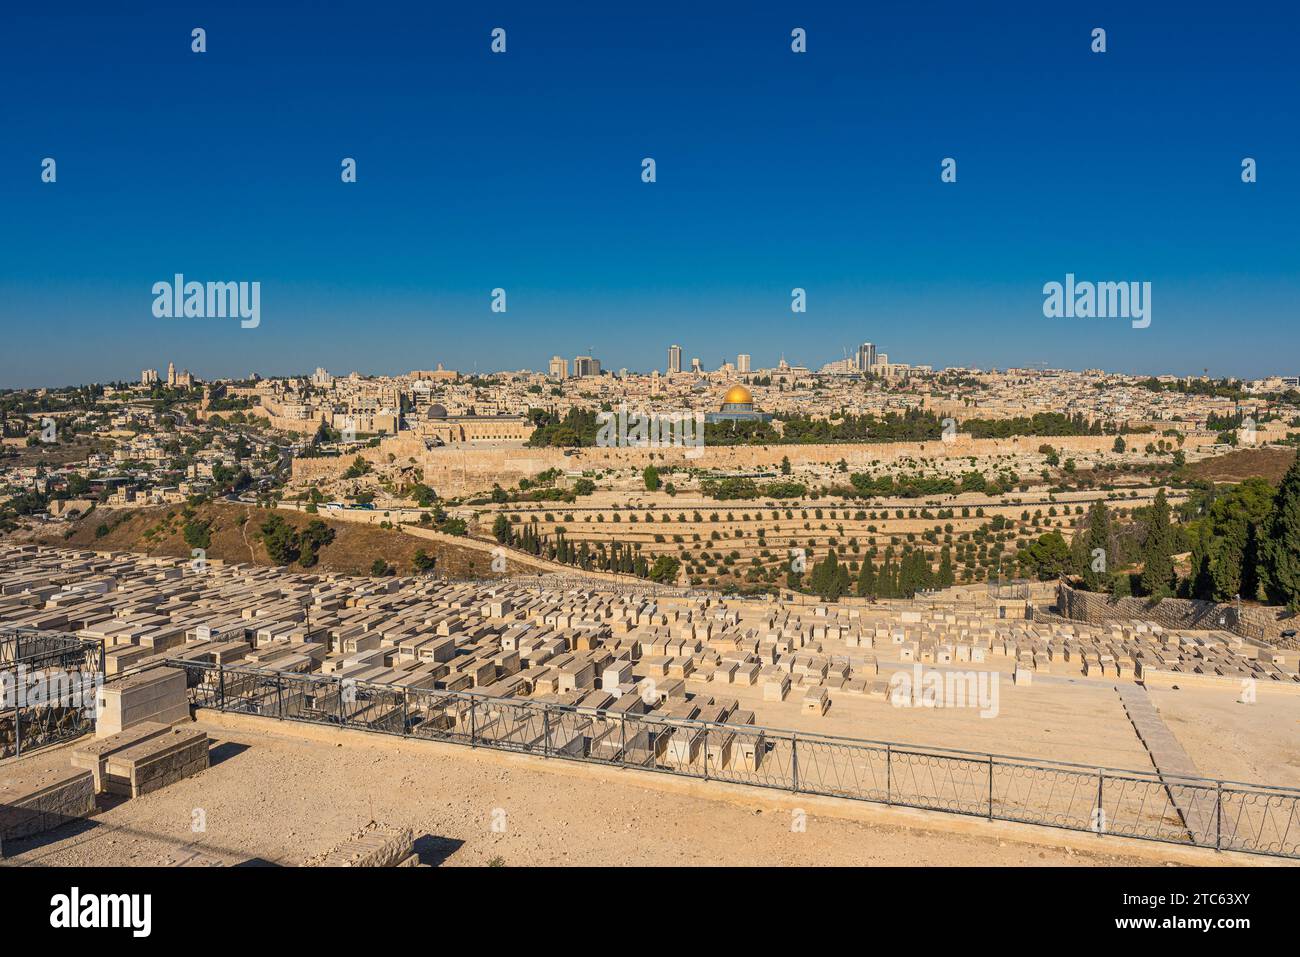 Vue panoramique de Jérusalem vue du Mont des oliviers avec un cimetière juif et la vieille ville avec le Mont du Temple et le Dôme du Rocher Banque D'Images